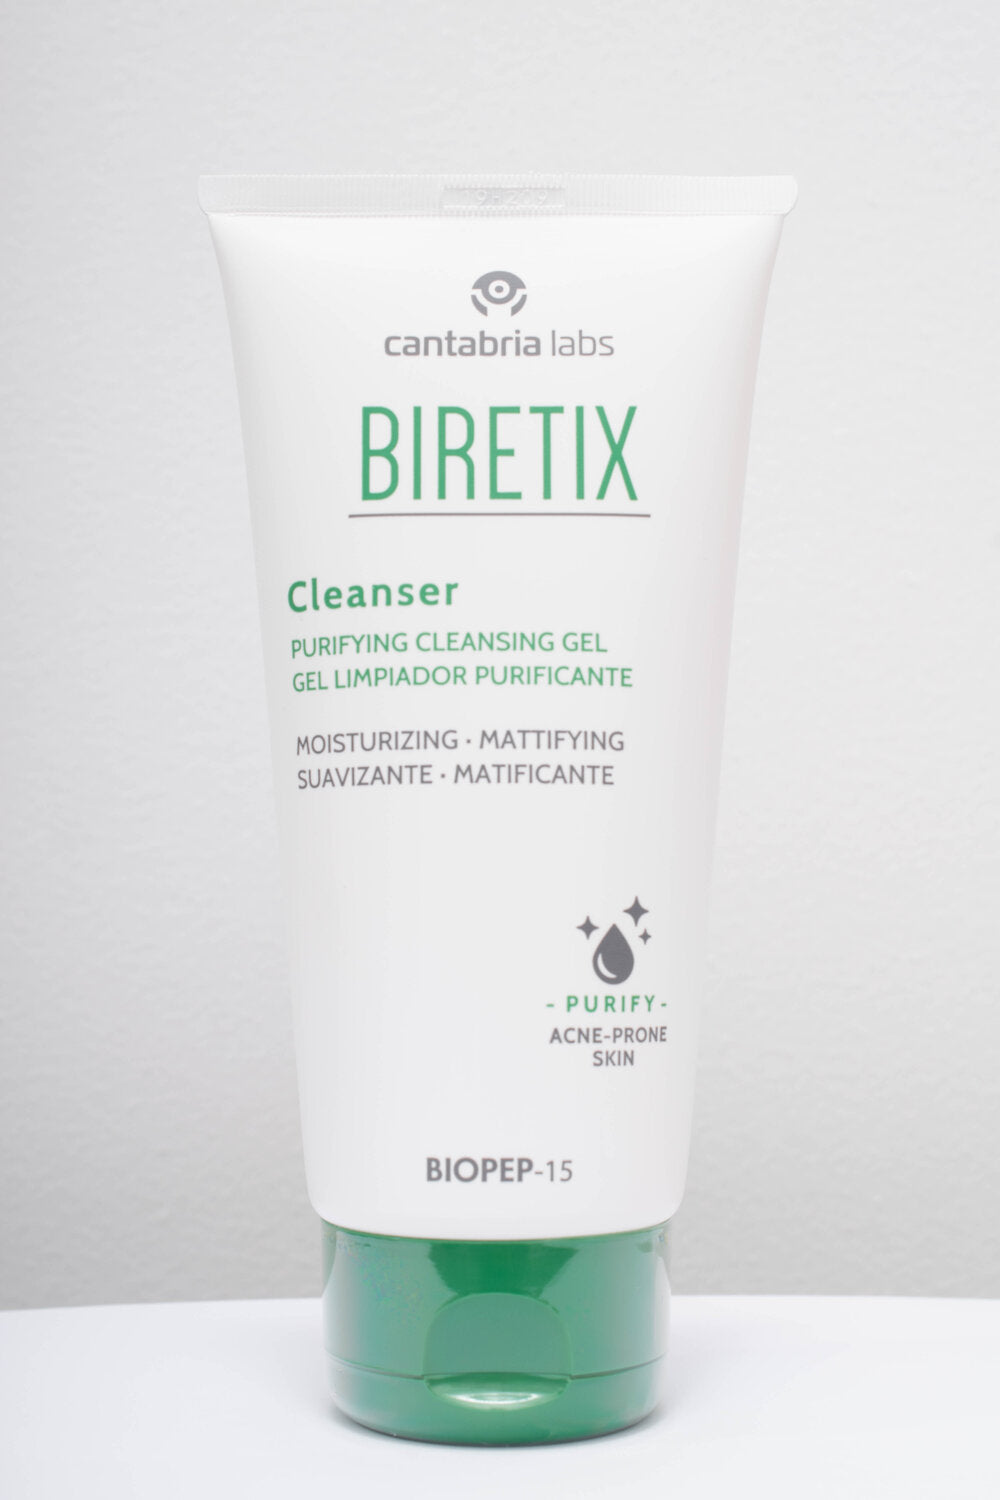 Biretix: Cleanser